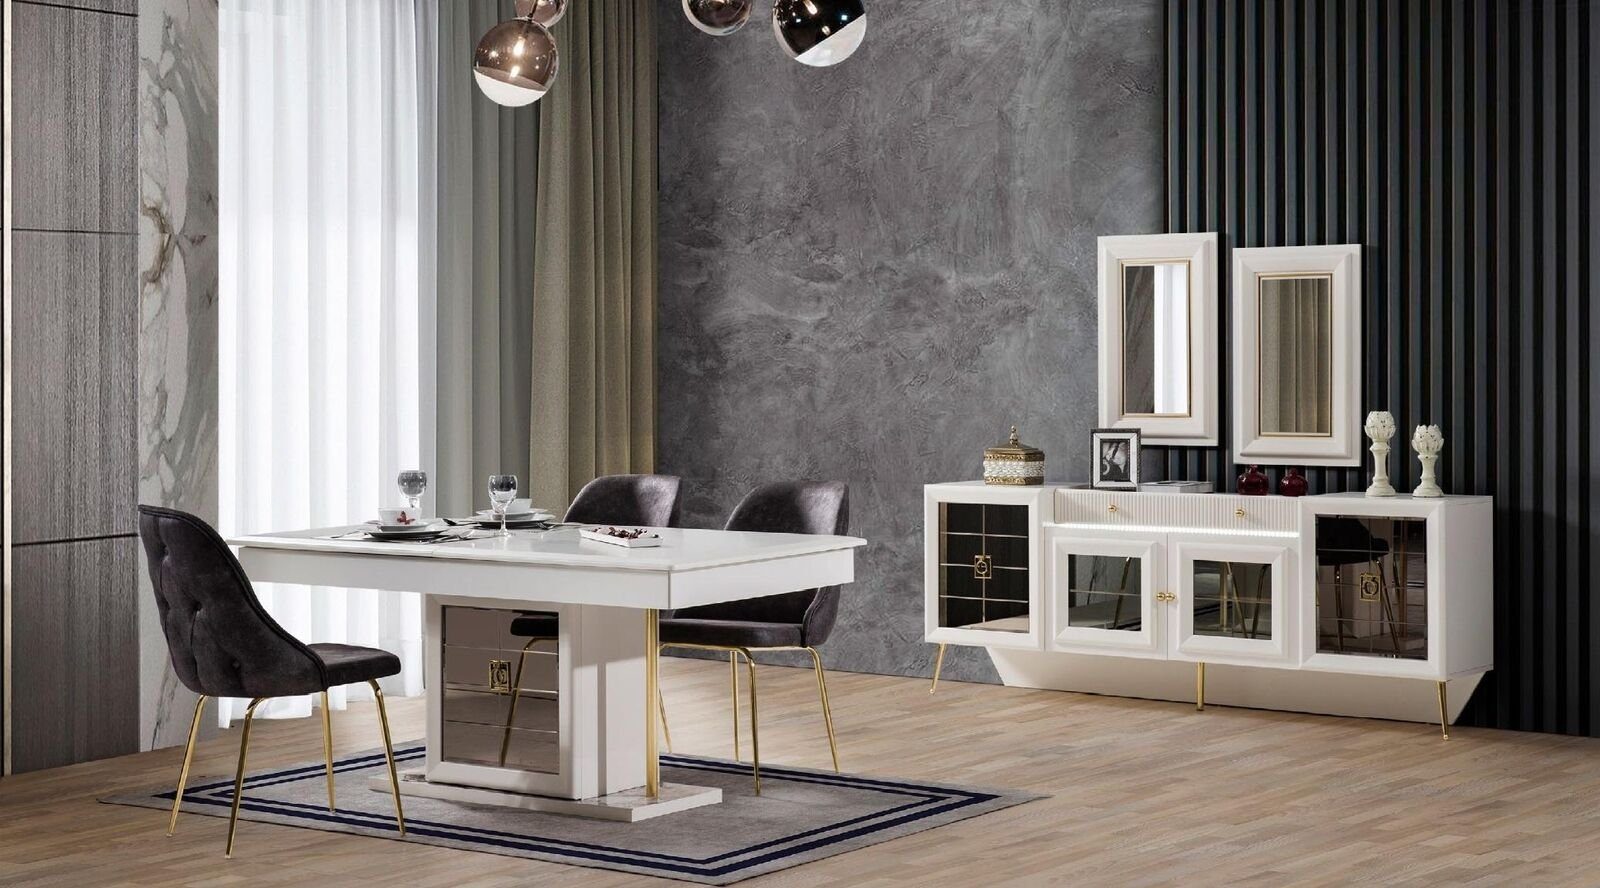 2x Stühle) Zimmer Designer Stühle Esstisch Tisch Möbel / Ess JVmoebel (Esstisch 2x Holz Luxus Moderner Ess